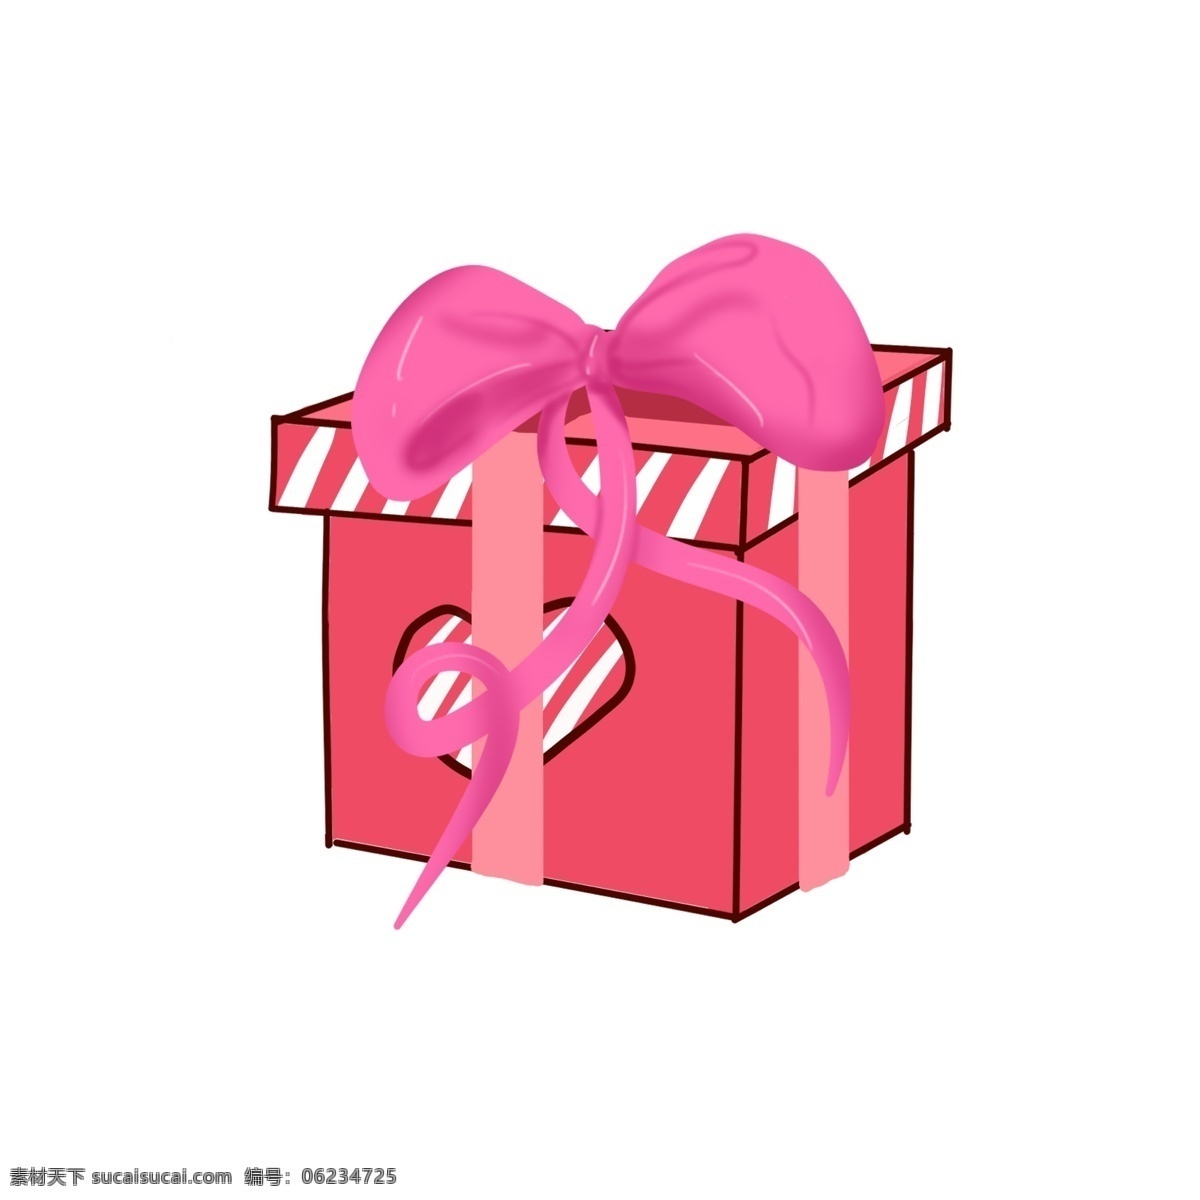 手绘 方形 礼物 盒 插画 情人节 红色蝴蝶结 礼物盒 红色礼物盒 方形礼物盒